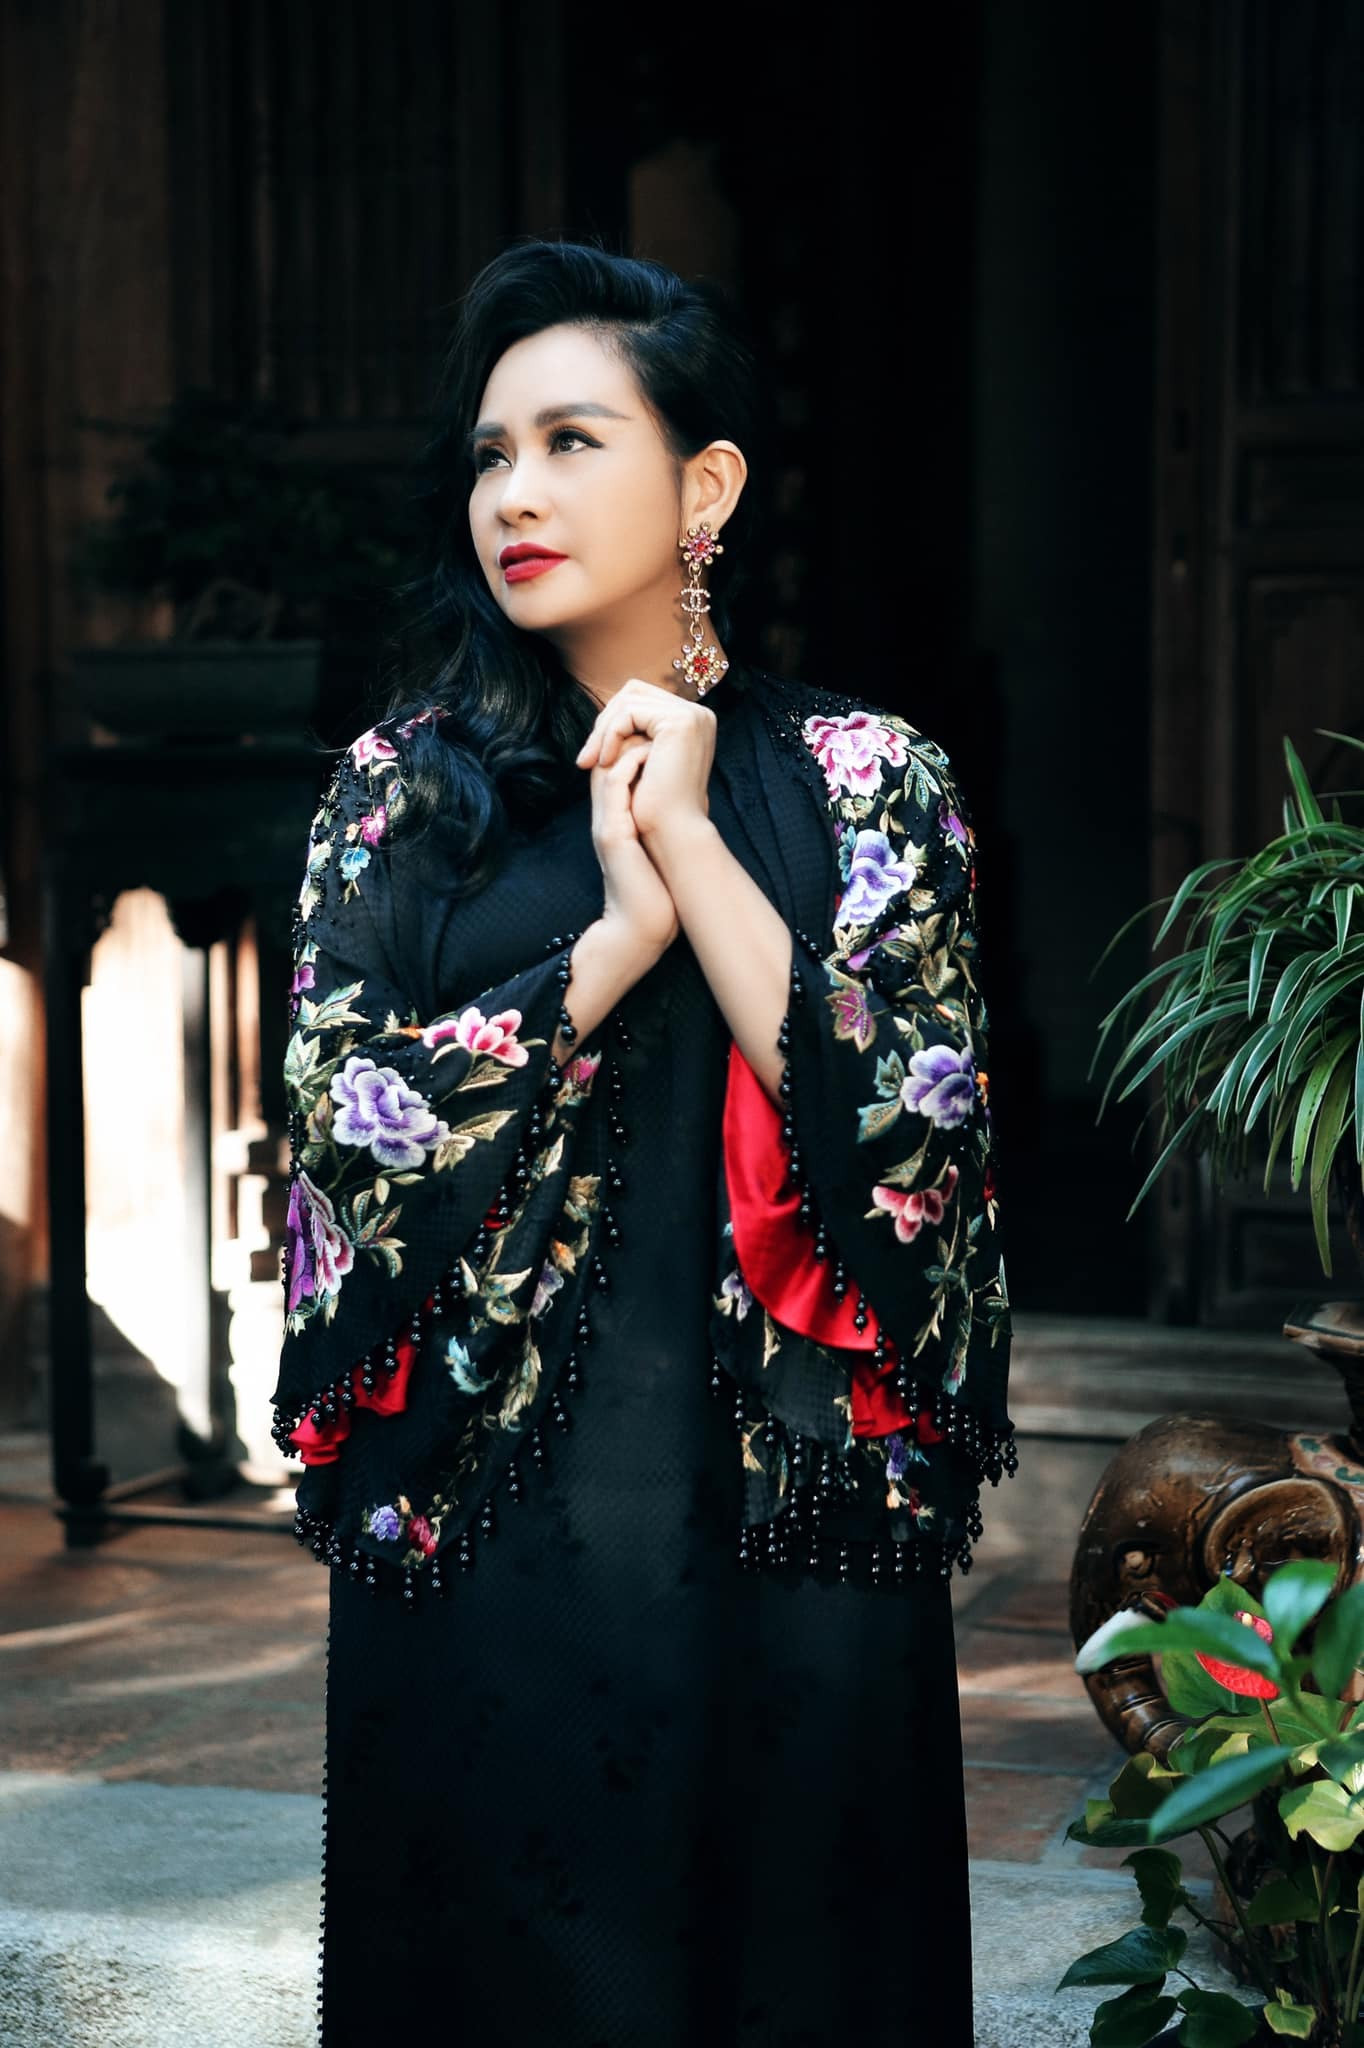 Loạt ảnh chân dung mới đẹp ma mị của diva Thanh Lam - 9